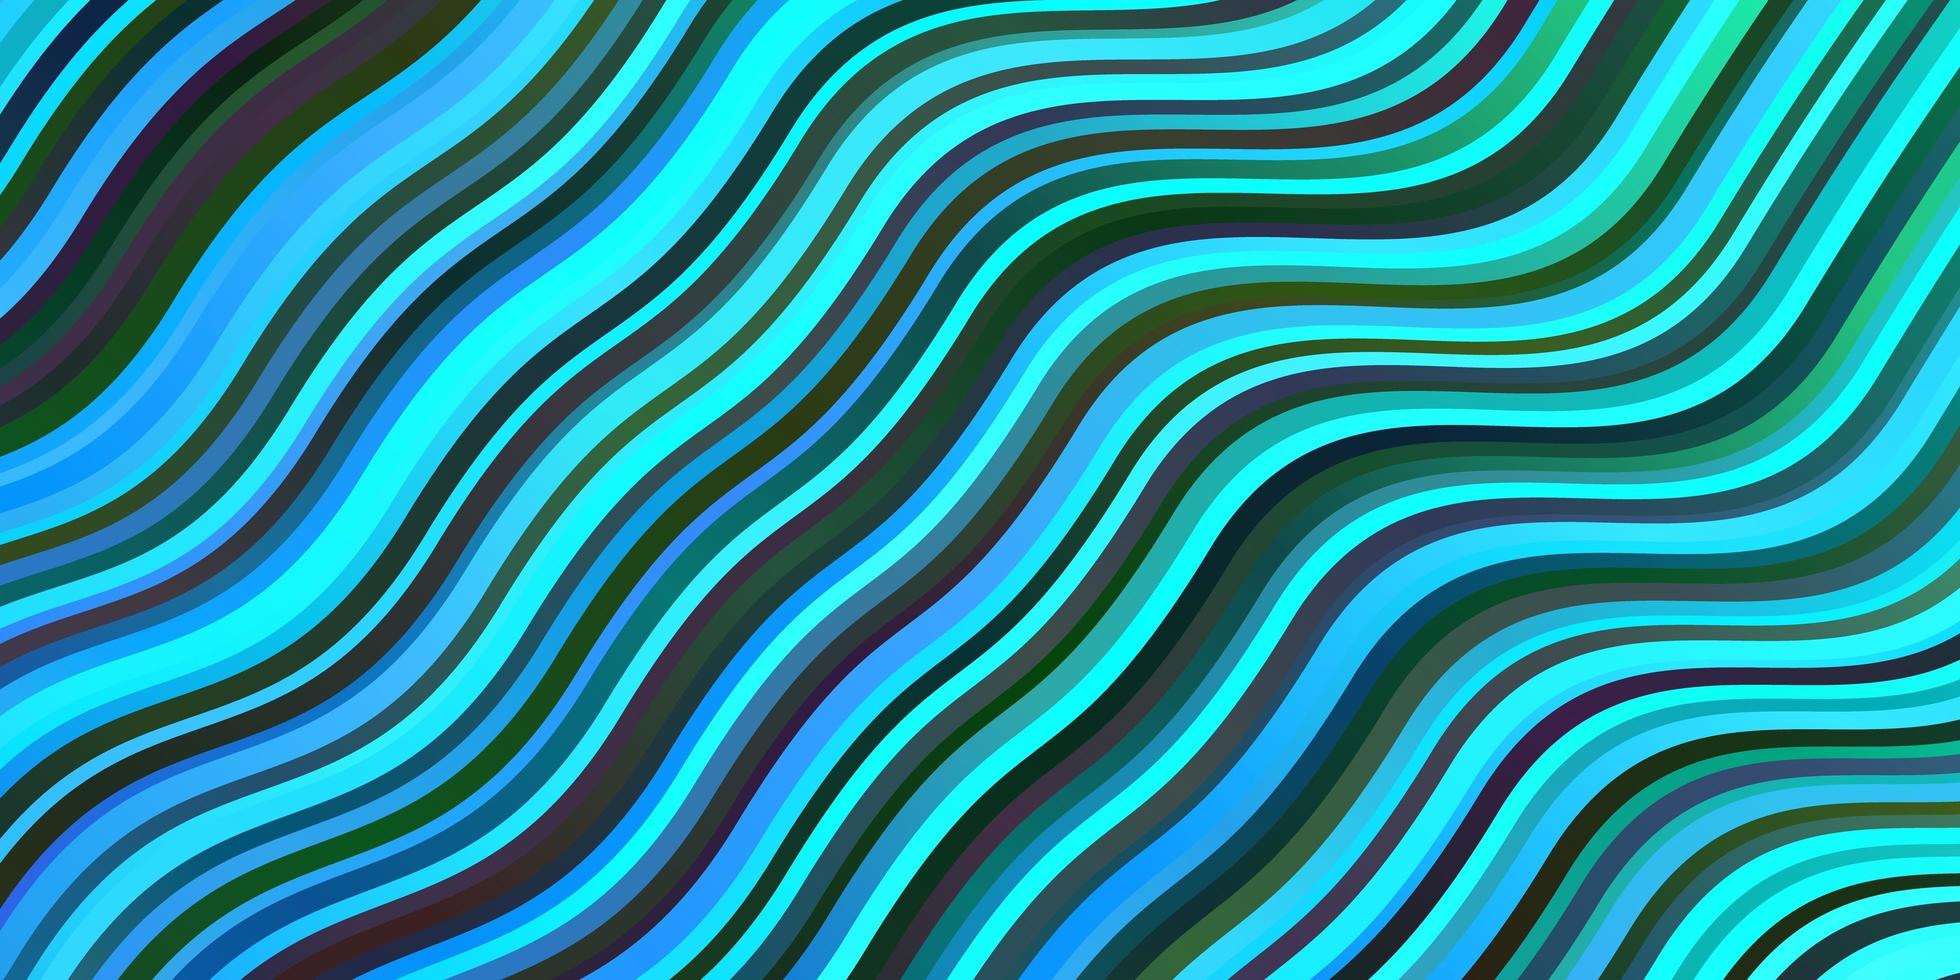 pano de fundo vector azul escuro com linhas dobradas